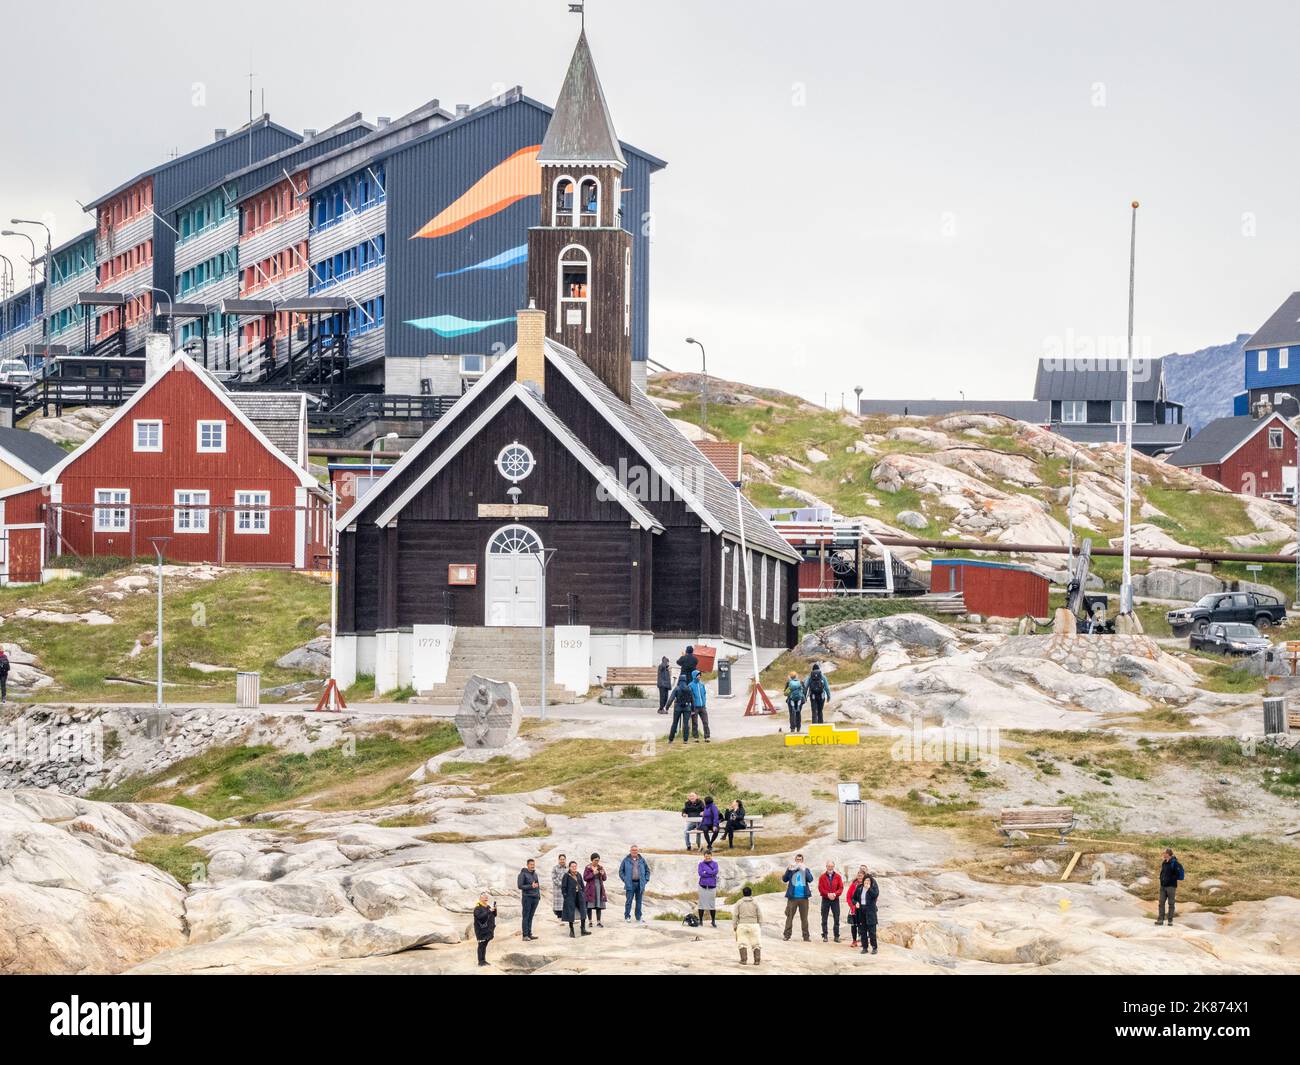 Una vista della Chiesa di Sion circondata da case dipinte di colori nella città di Ilulissat, Groenlandia, Danimarca, regioni polari Foto Stock